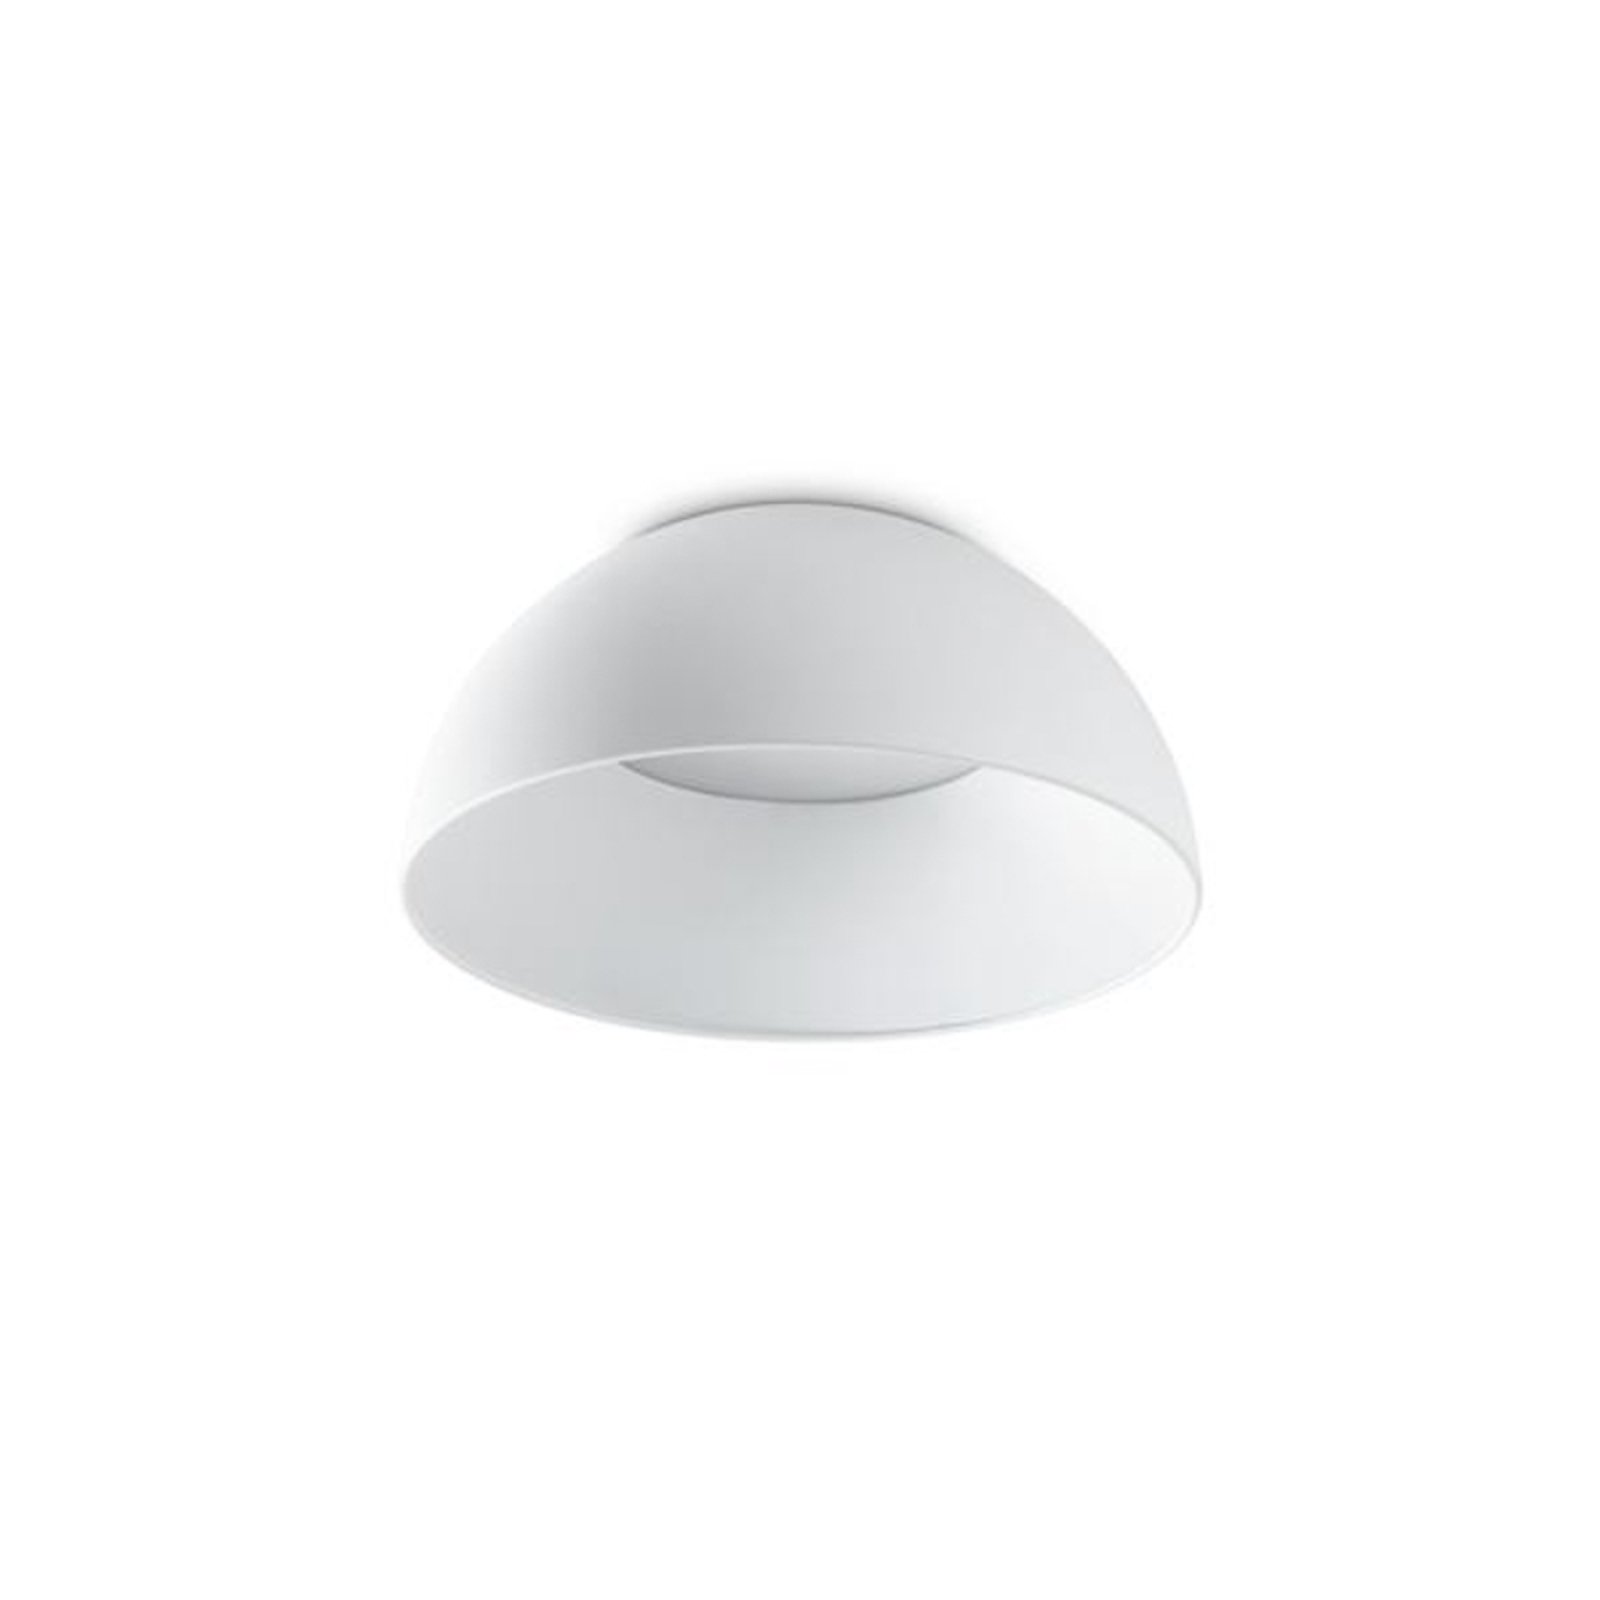 Ideal Lux LED stropna svjetiljka Corolla-1, bijela, metalna, Ø 35 cm